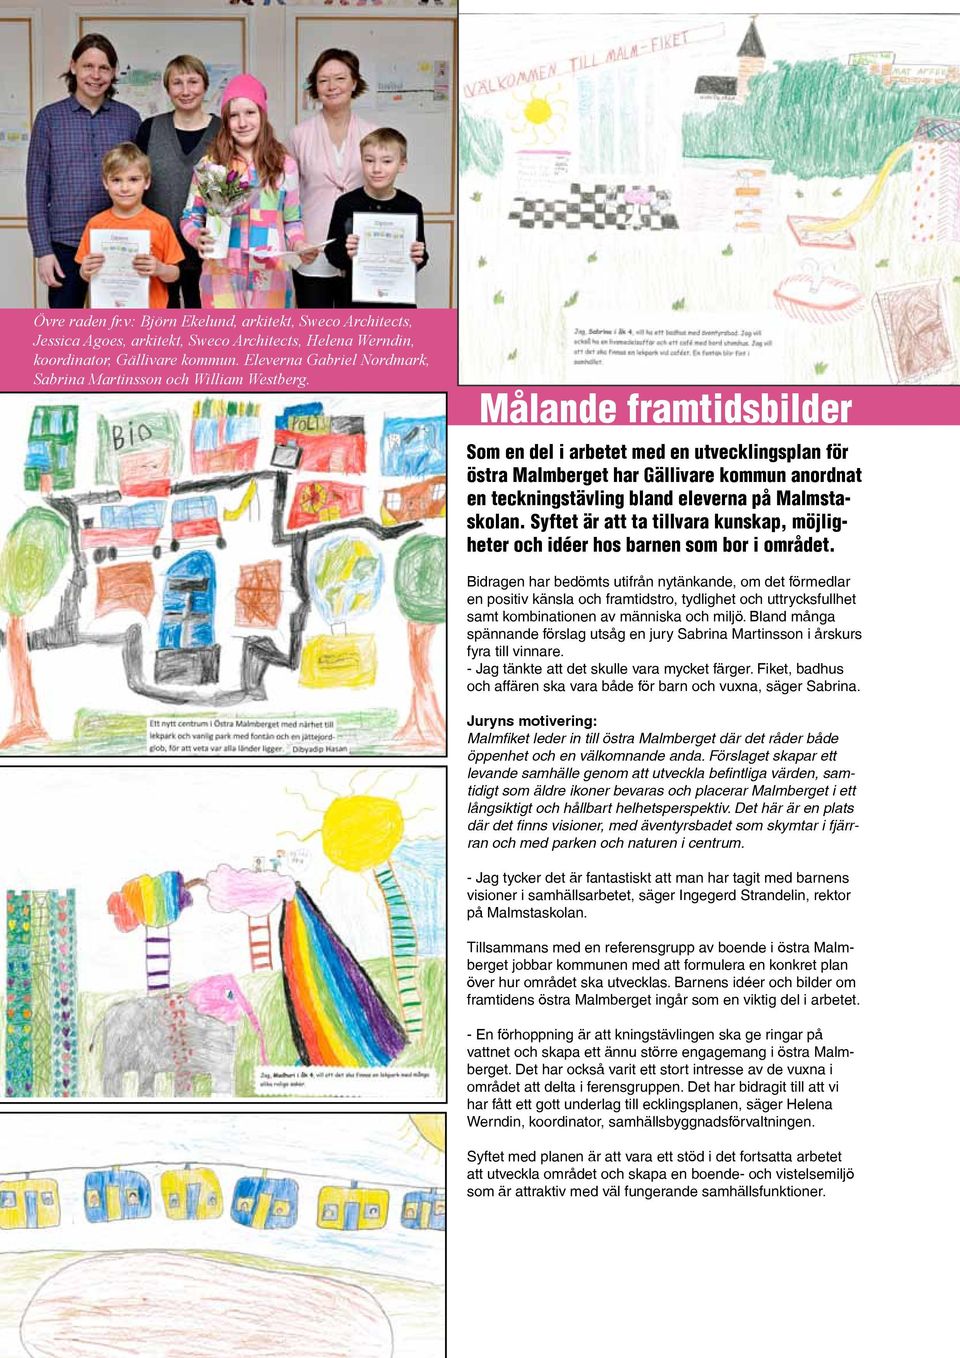 Målande framtidsbilder Som en del i arbetet med en utvecklingsplan för östra Malmberget har Gällivare kommun anordnat en teckningstävling bland eleverna på Malmstaskolan.